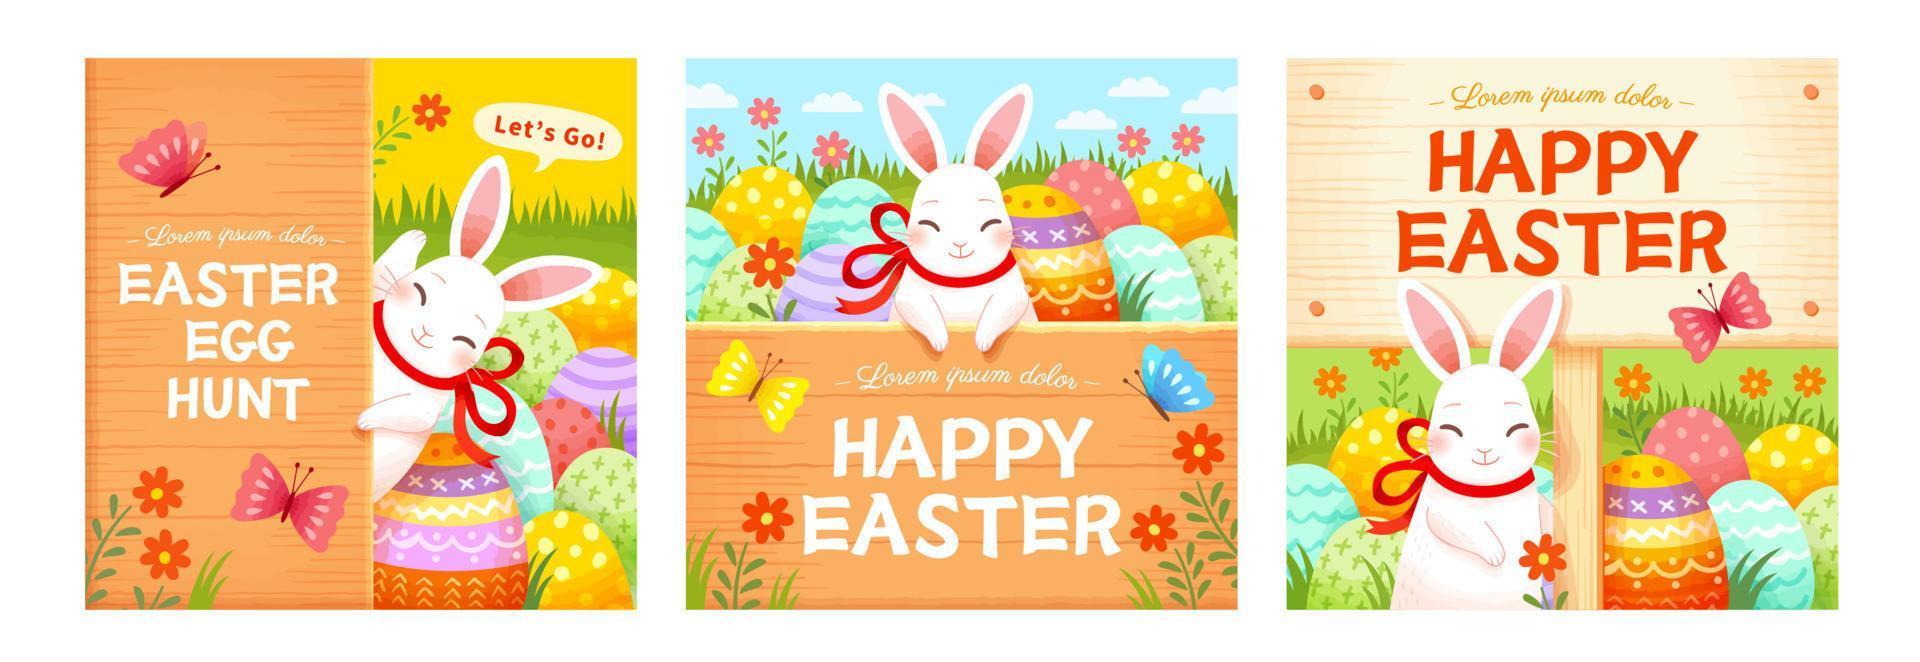 Pascua de Resurrección plantillas con linda conejos, huevos y madera tableros fiesta antecedentes adecuado para evento invitación o saludo tarjeta. vector